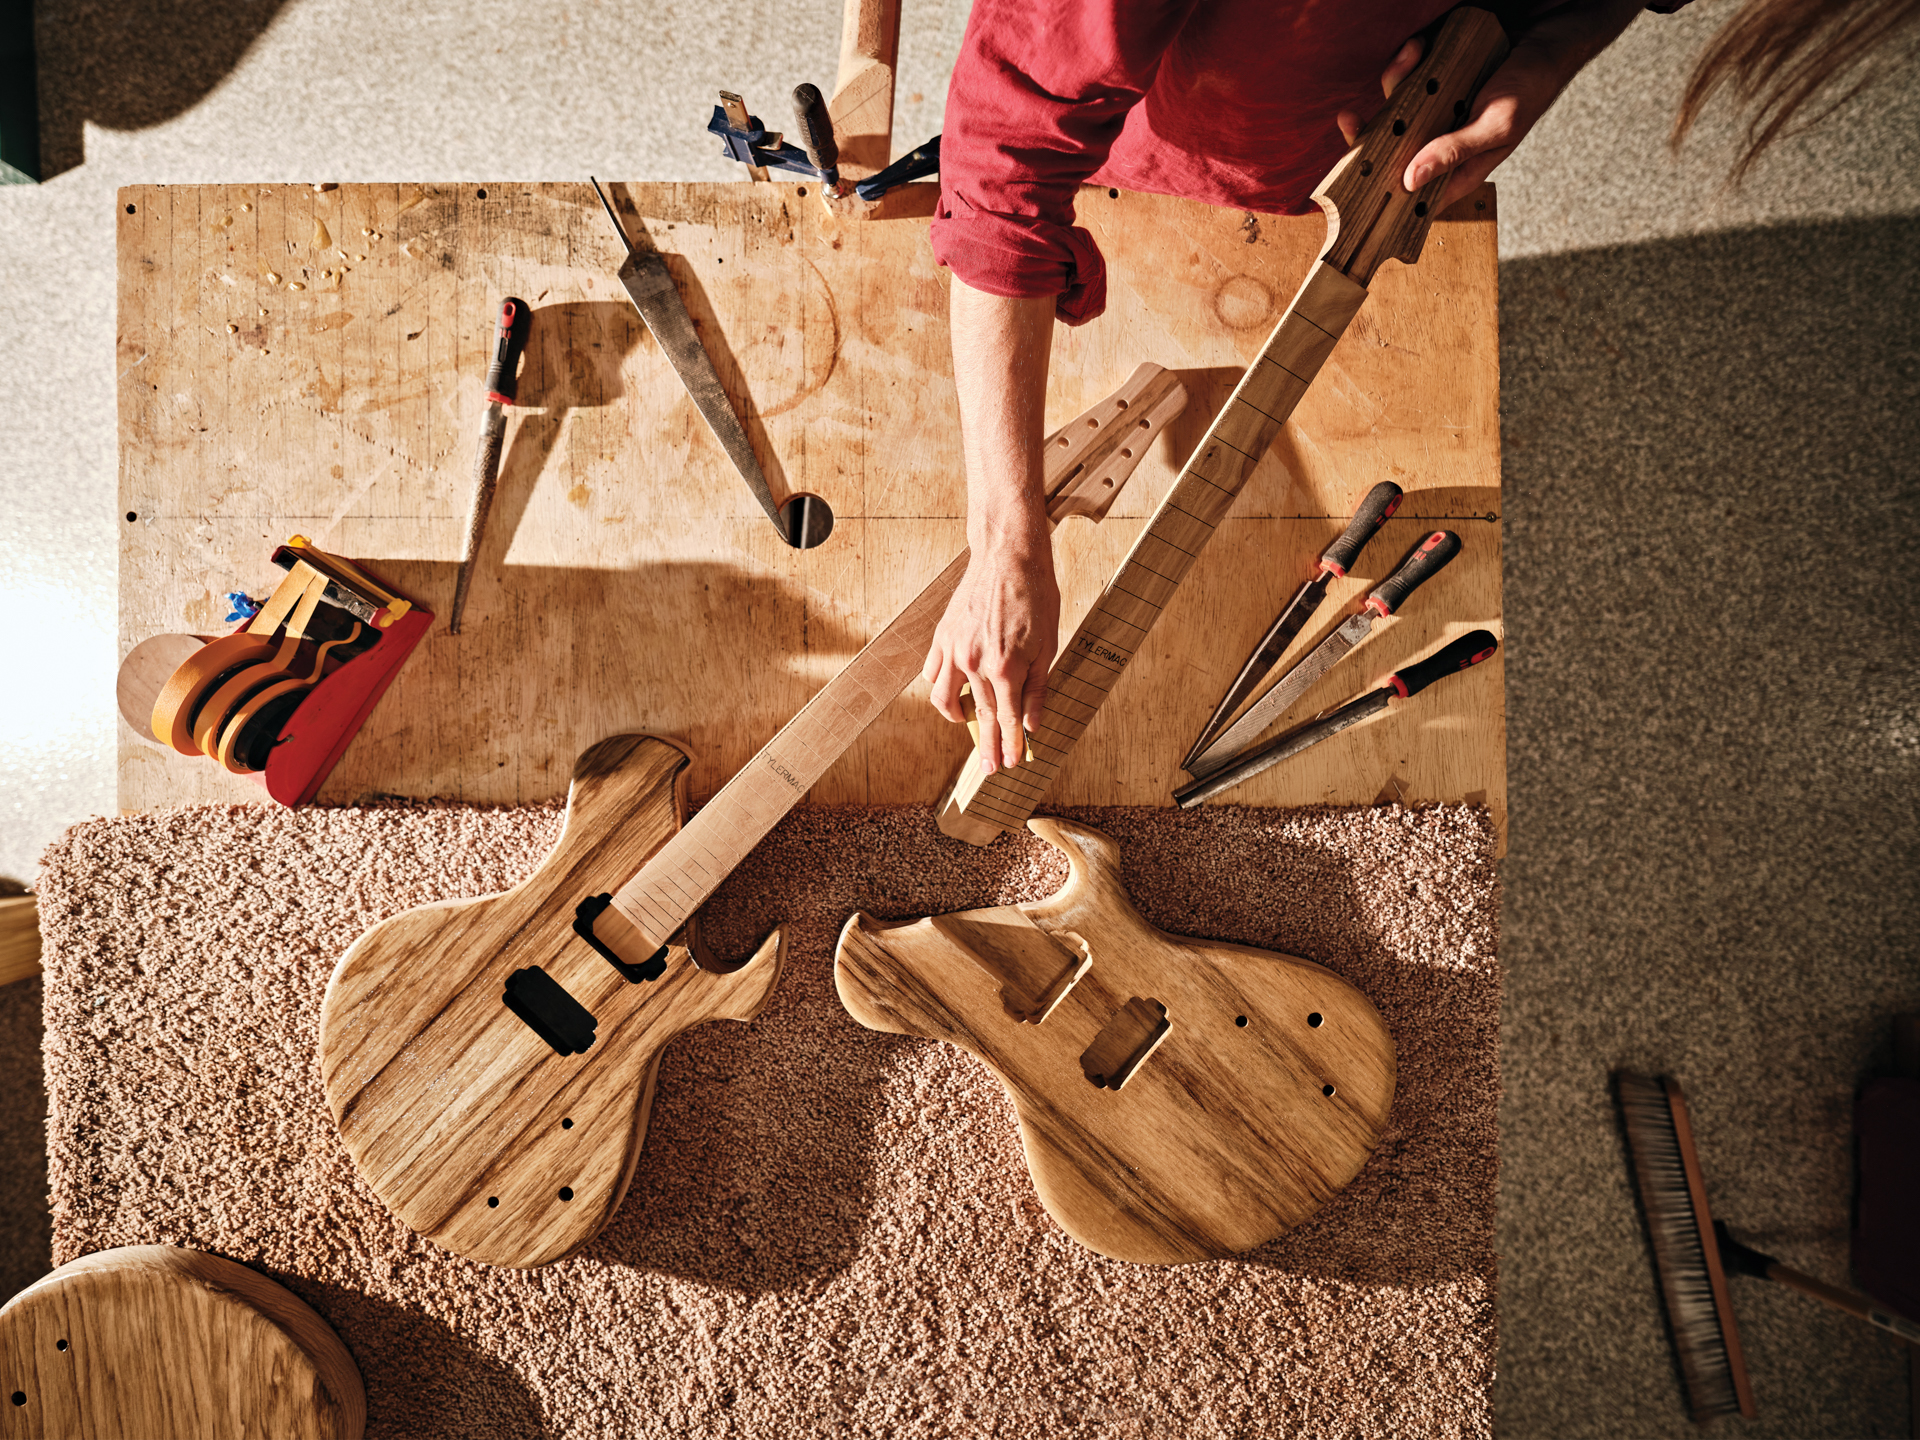 Local musician handcrafts wooden guitars in his Naples studio